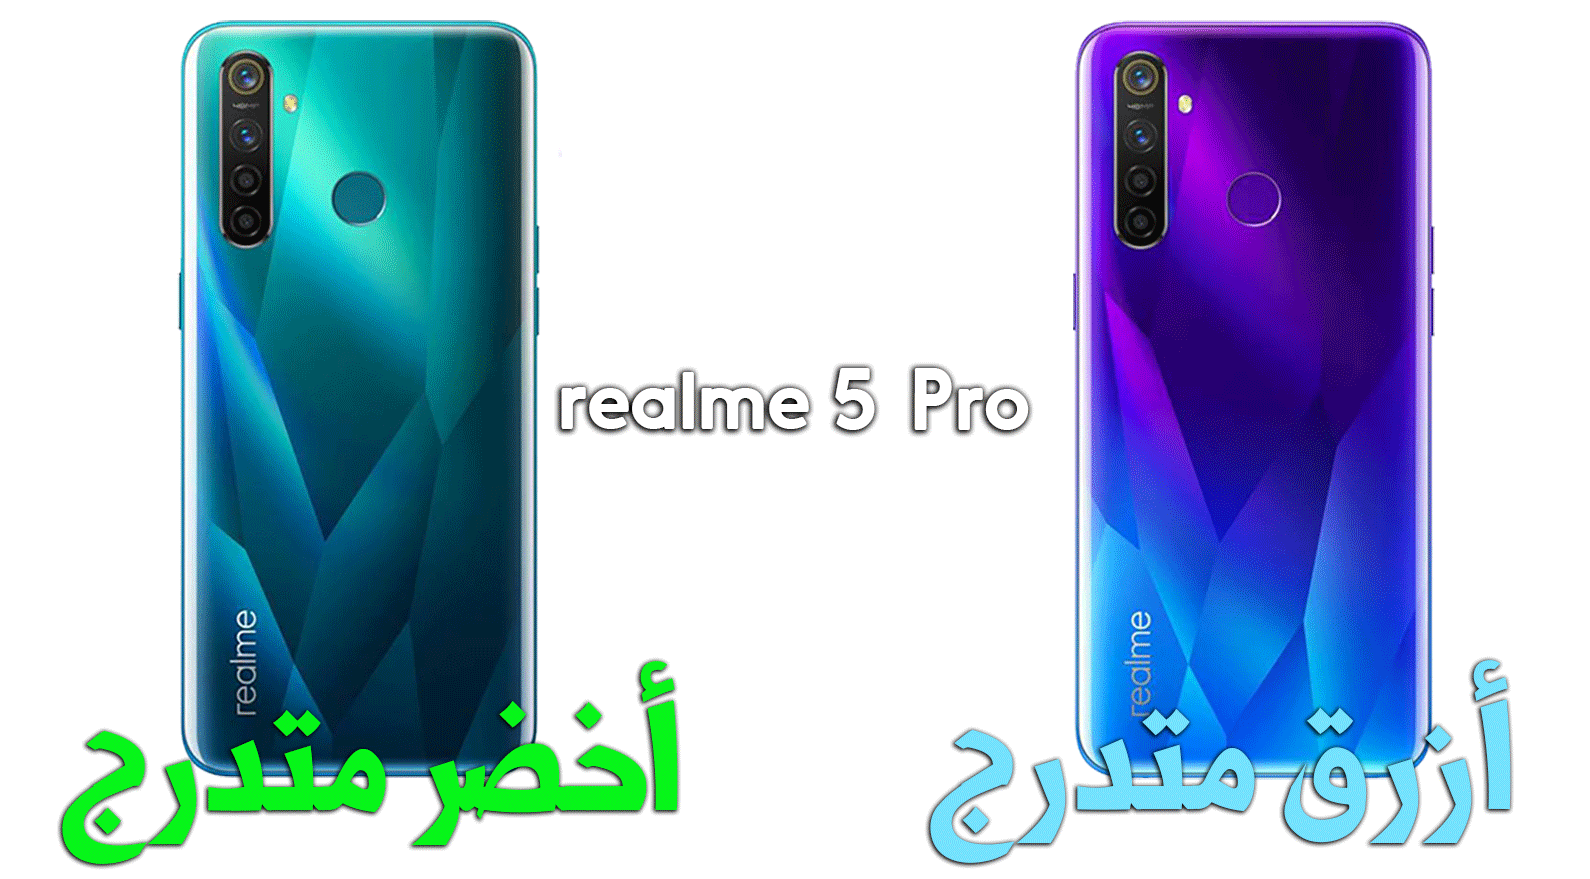 Realme 5 Pro